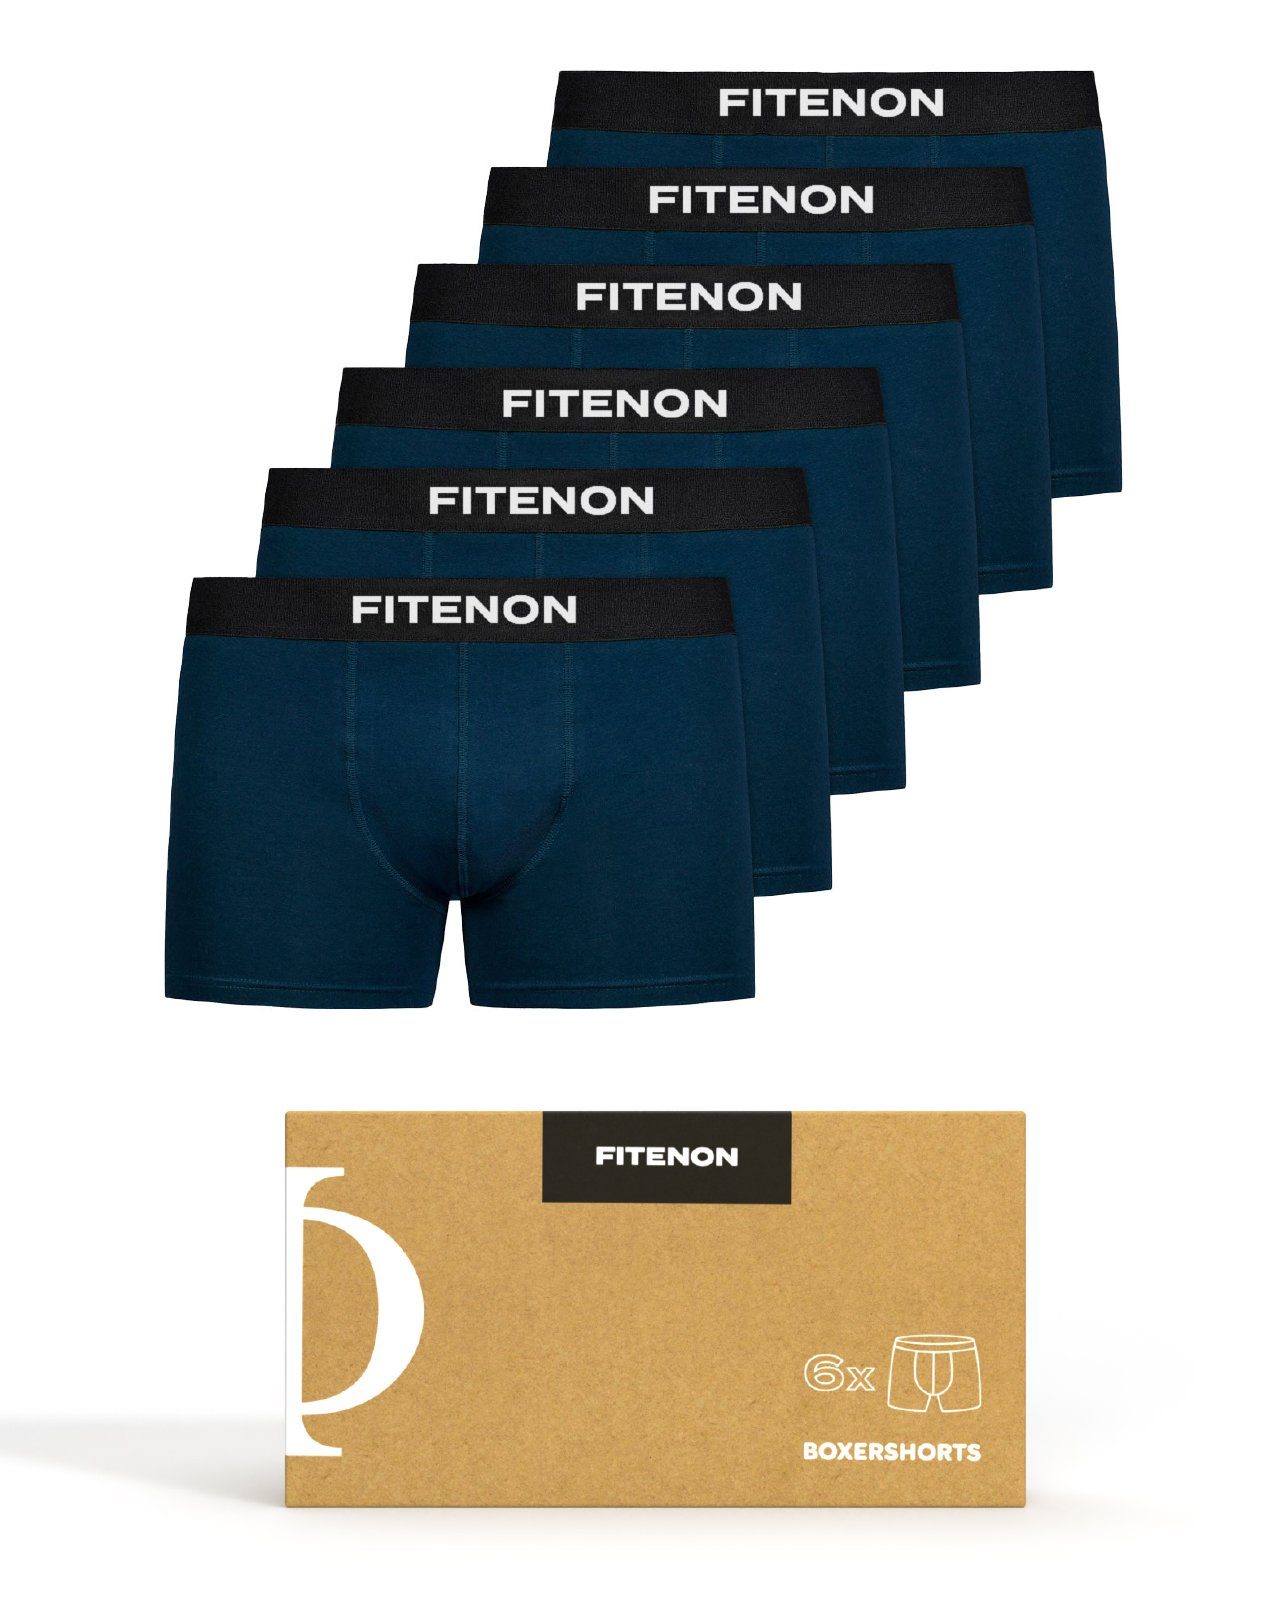 FITENON Boxershorts Herren Zettel, mit Navy Baumwolle Set) 6x ohne (6 kratzenden er Logo-Elastikbund Unterhosen, Unterwäsche